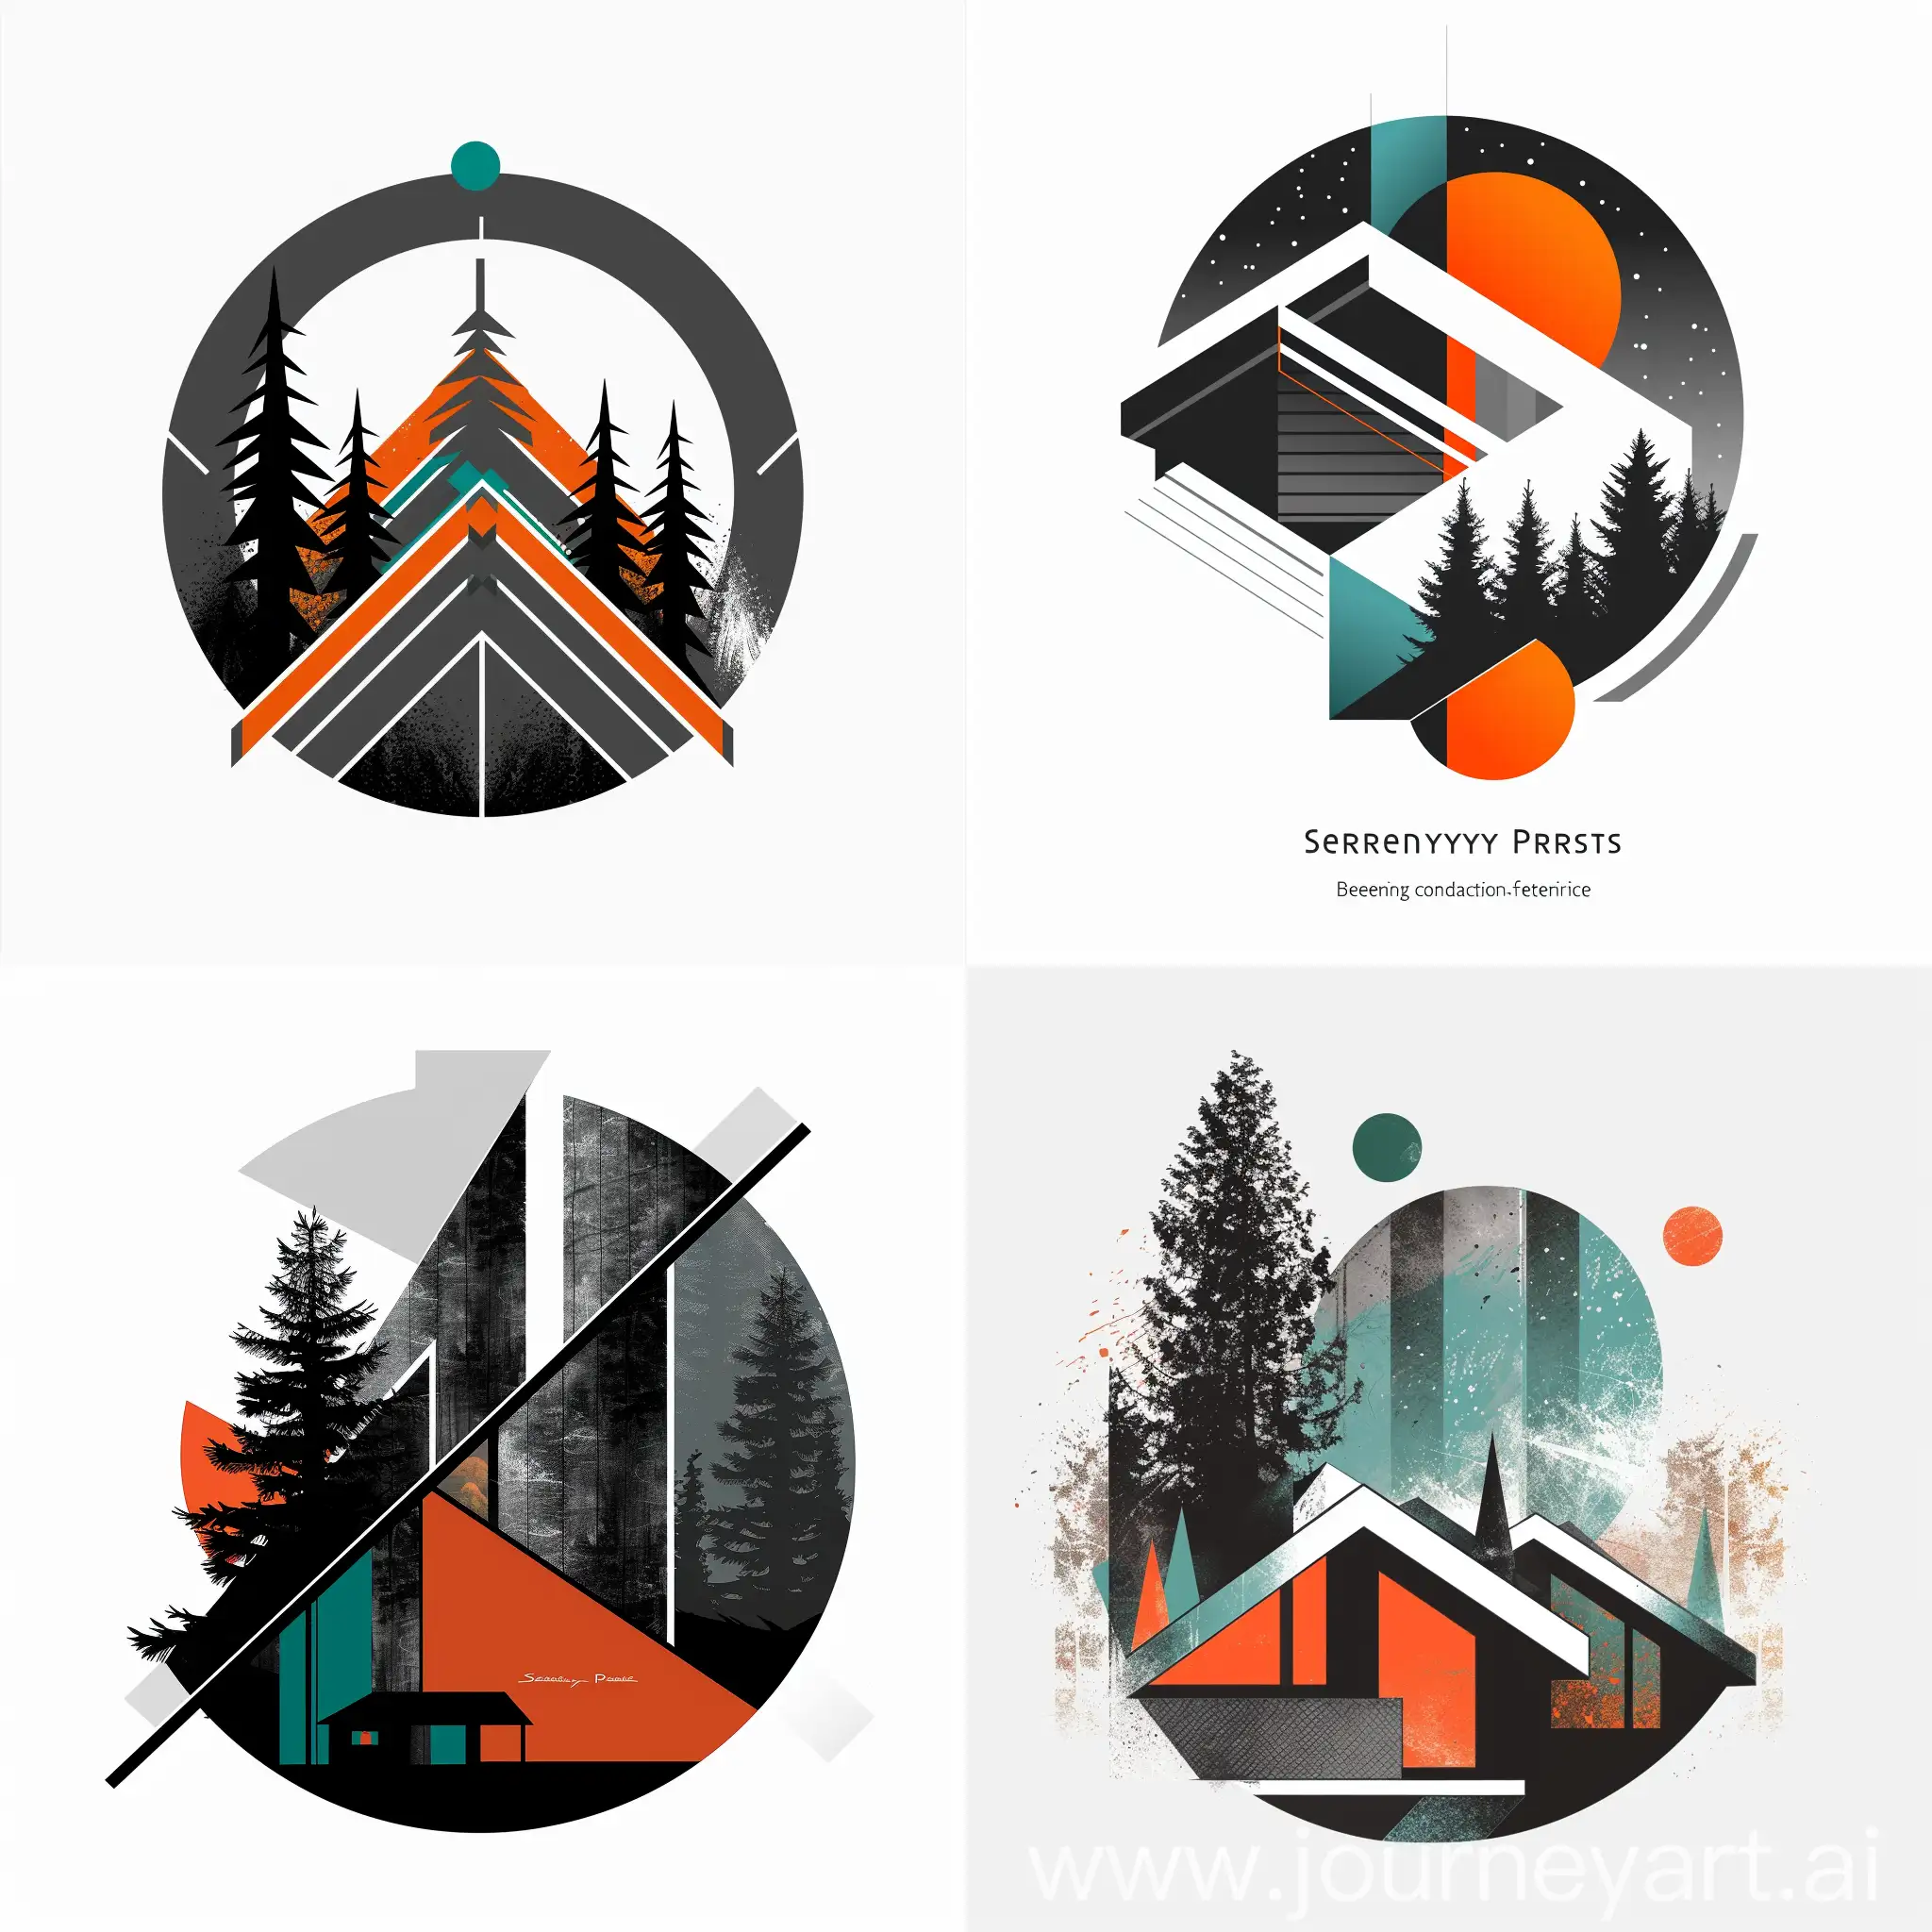 Rustic-Charm-Serenity-Pines-Cozy-Cabin-Rentals-Logo